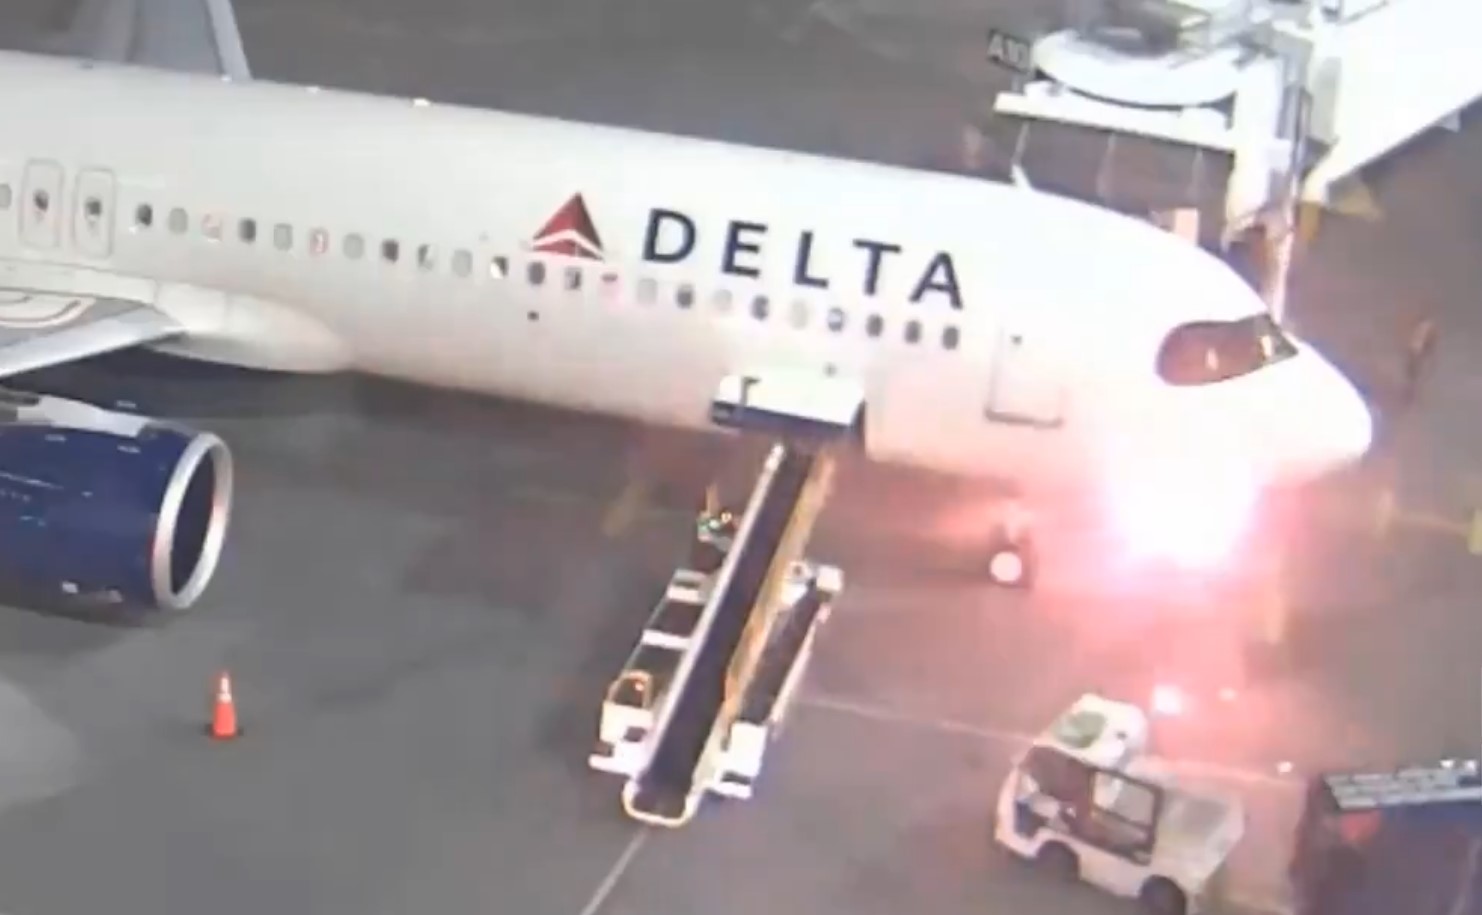 ΗΠΑ: Πανικός ανάμεσα σε 189 επιβάτες έπειτα από έκρηξη σε αεροσκάφος της Delta Airlines - Ακολούθησε εκκένωση